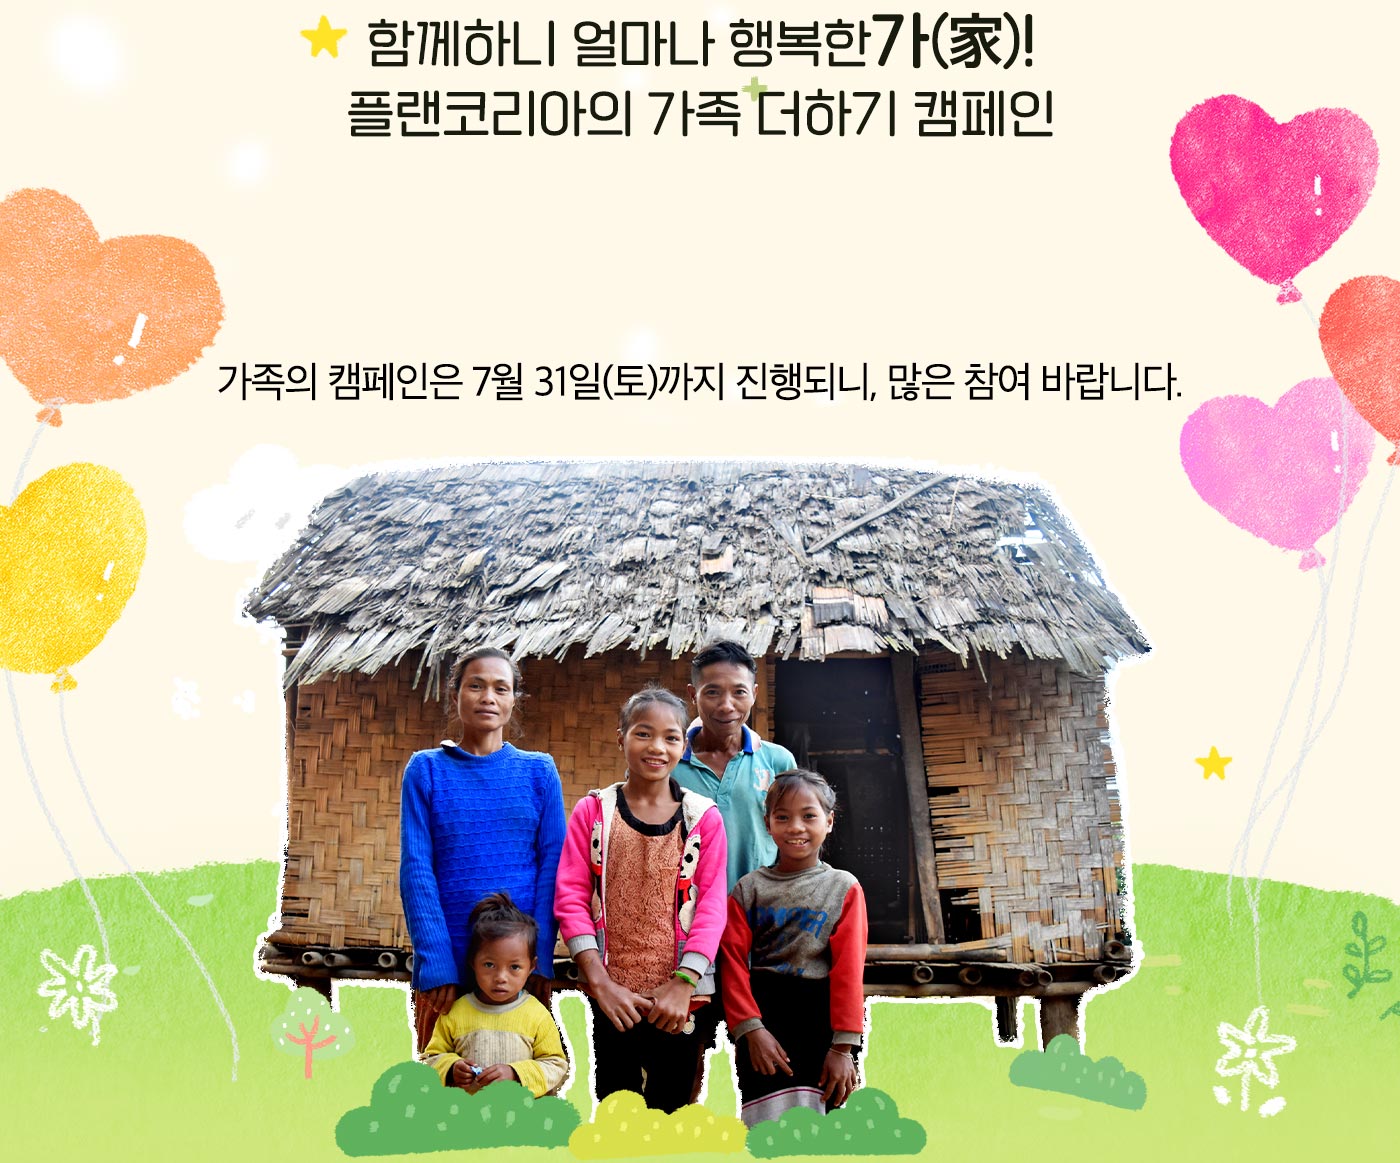 해외아동결연 캠페인 가족의 탄생, 함께하니 얼마나 행복한가! 플랜코리아의 가족 더하기 캠페인